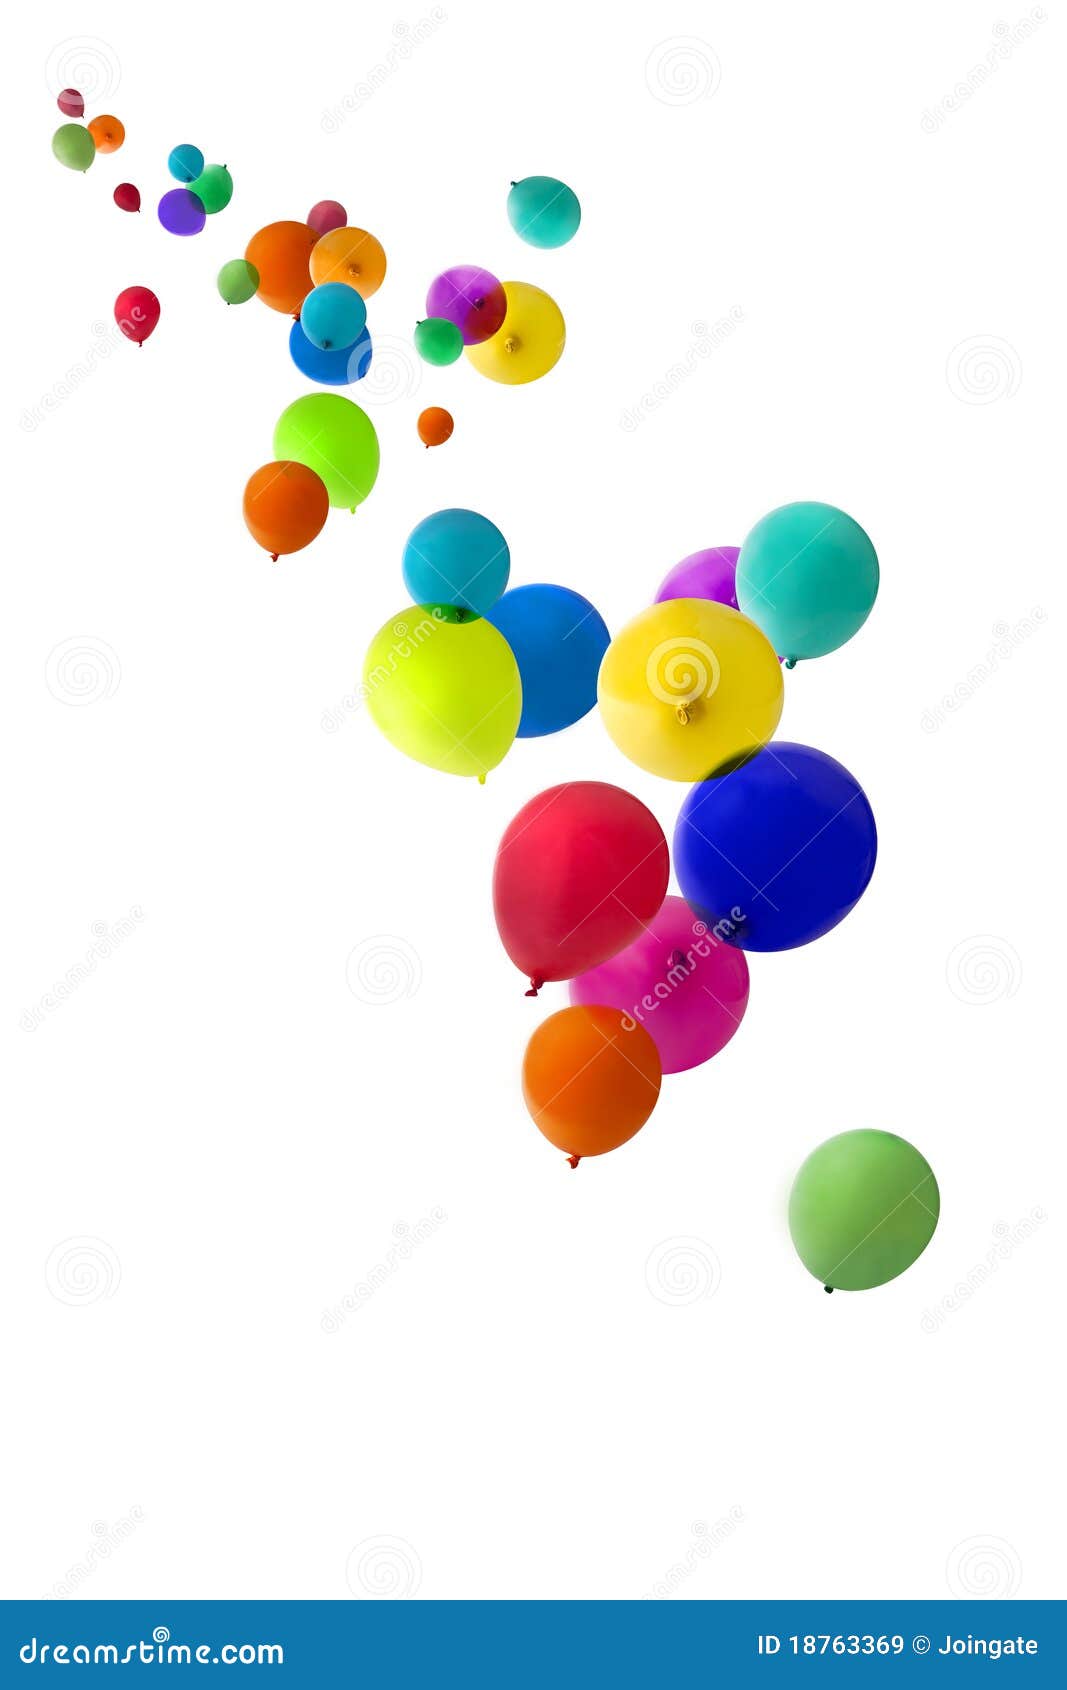 balloons floating upwards